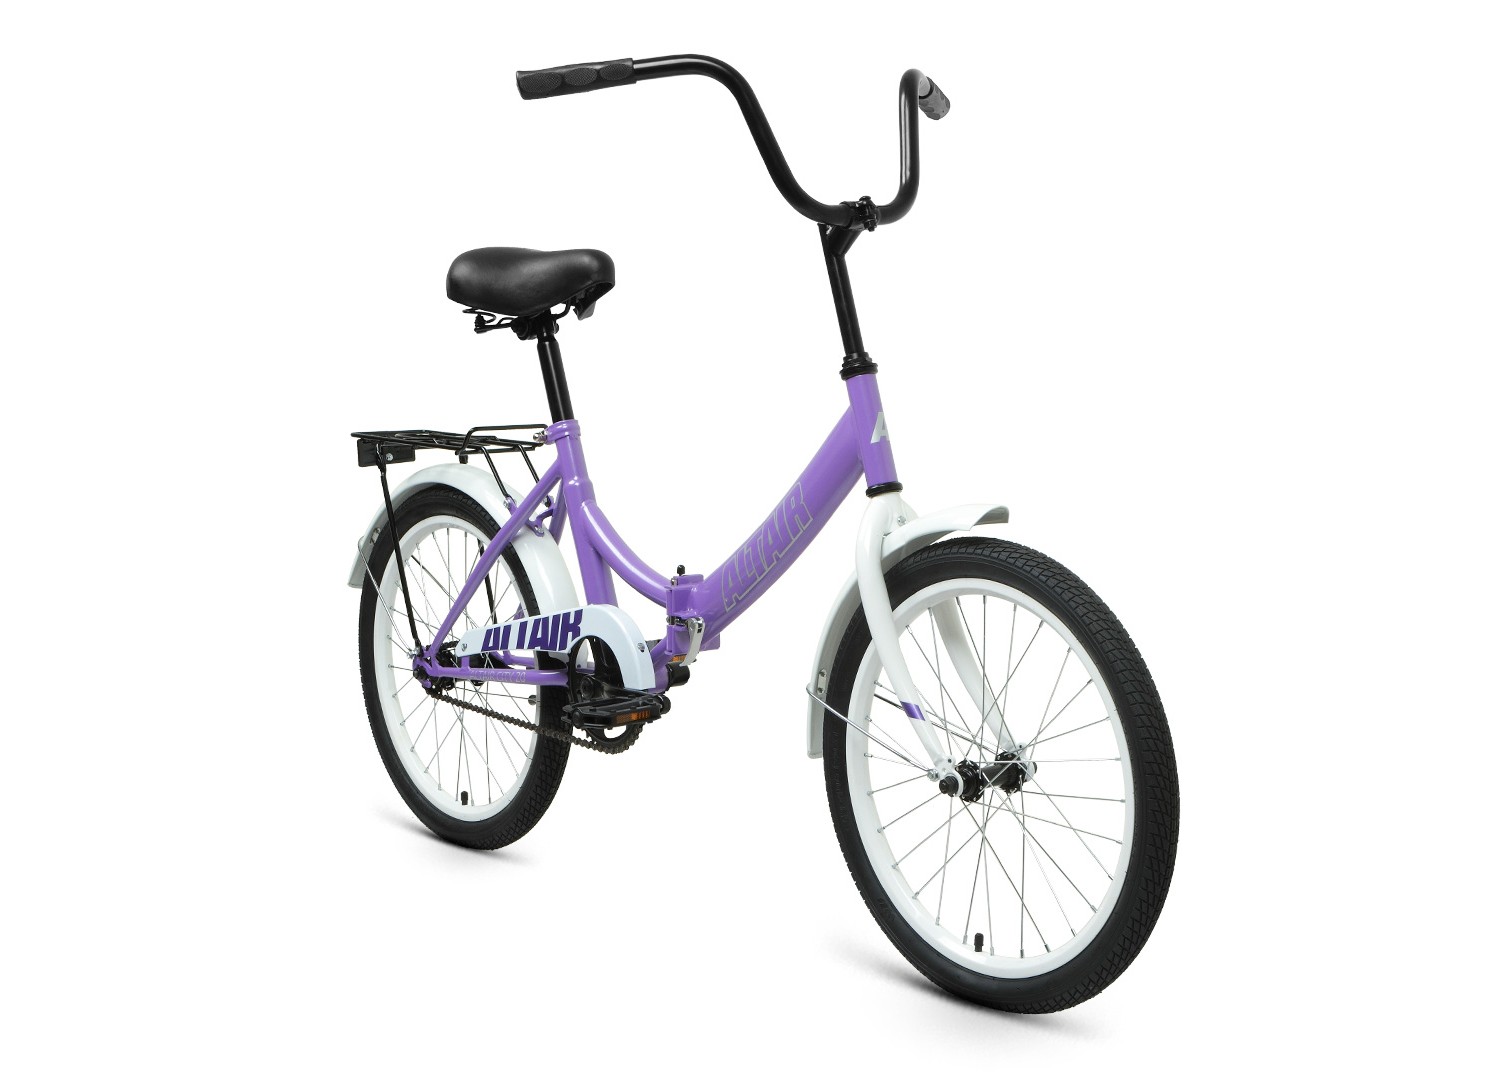 Складной велосипед Altair City 20, год 2022, цвет Фиолетовый-Серебристый, ростовка 14